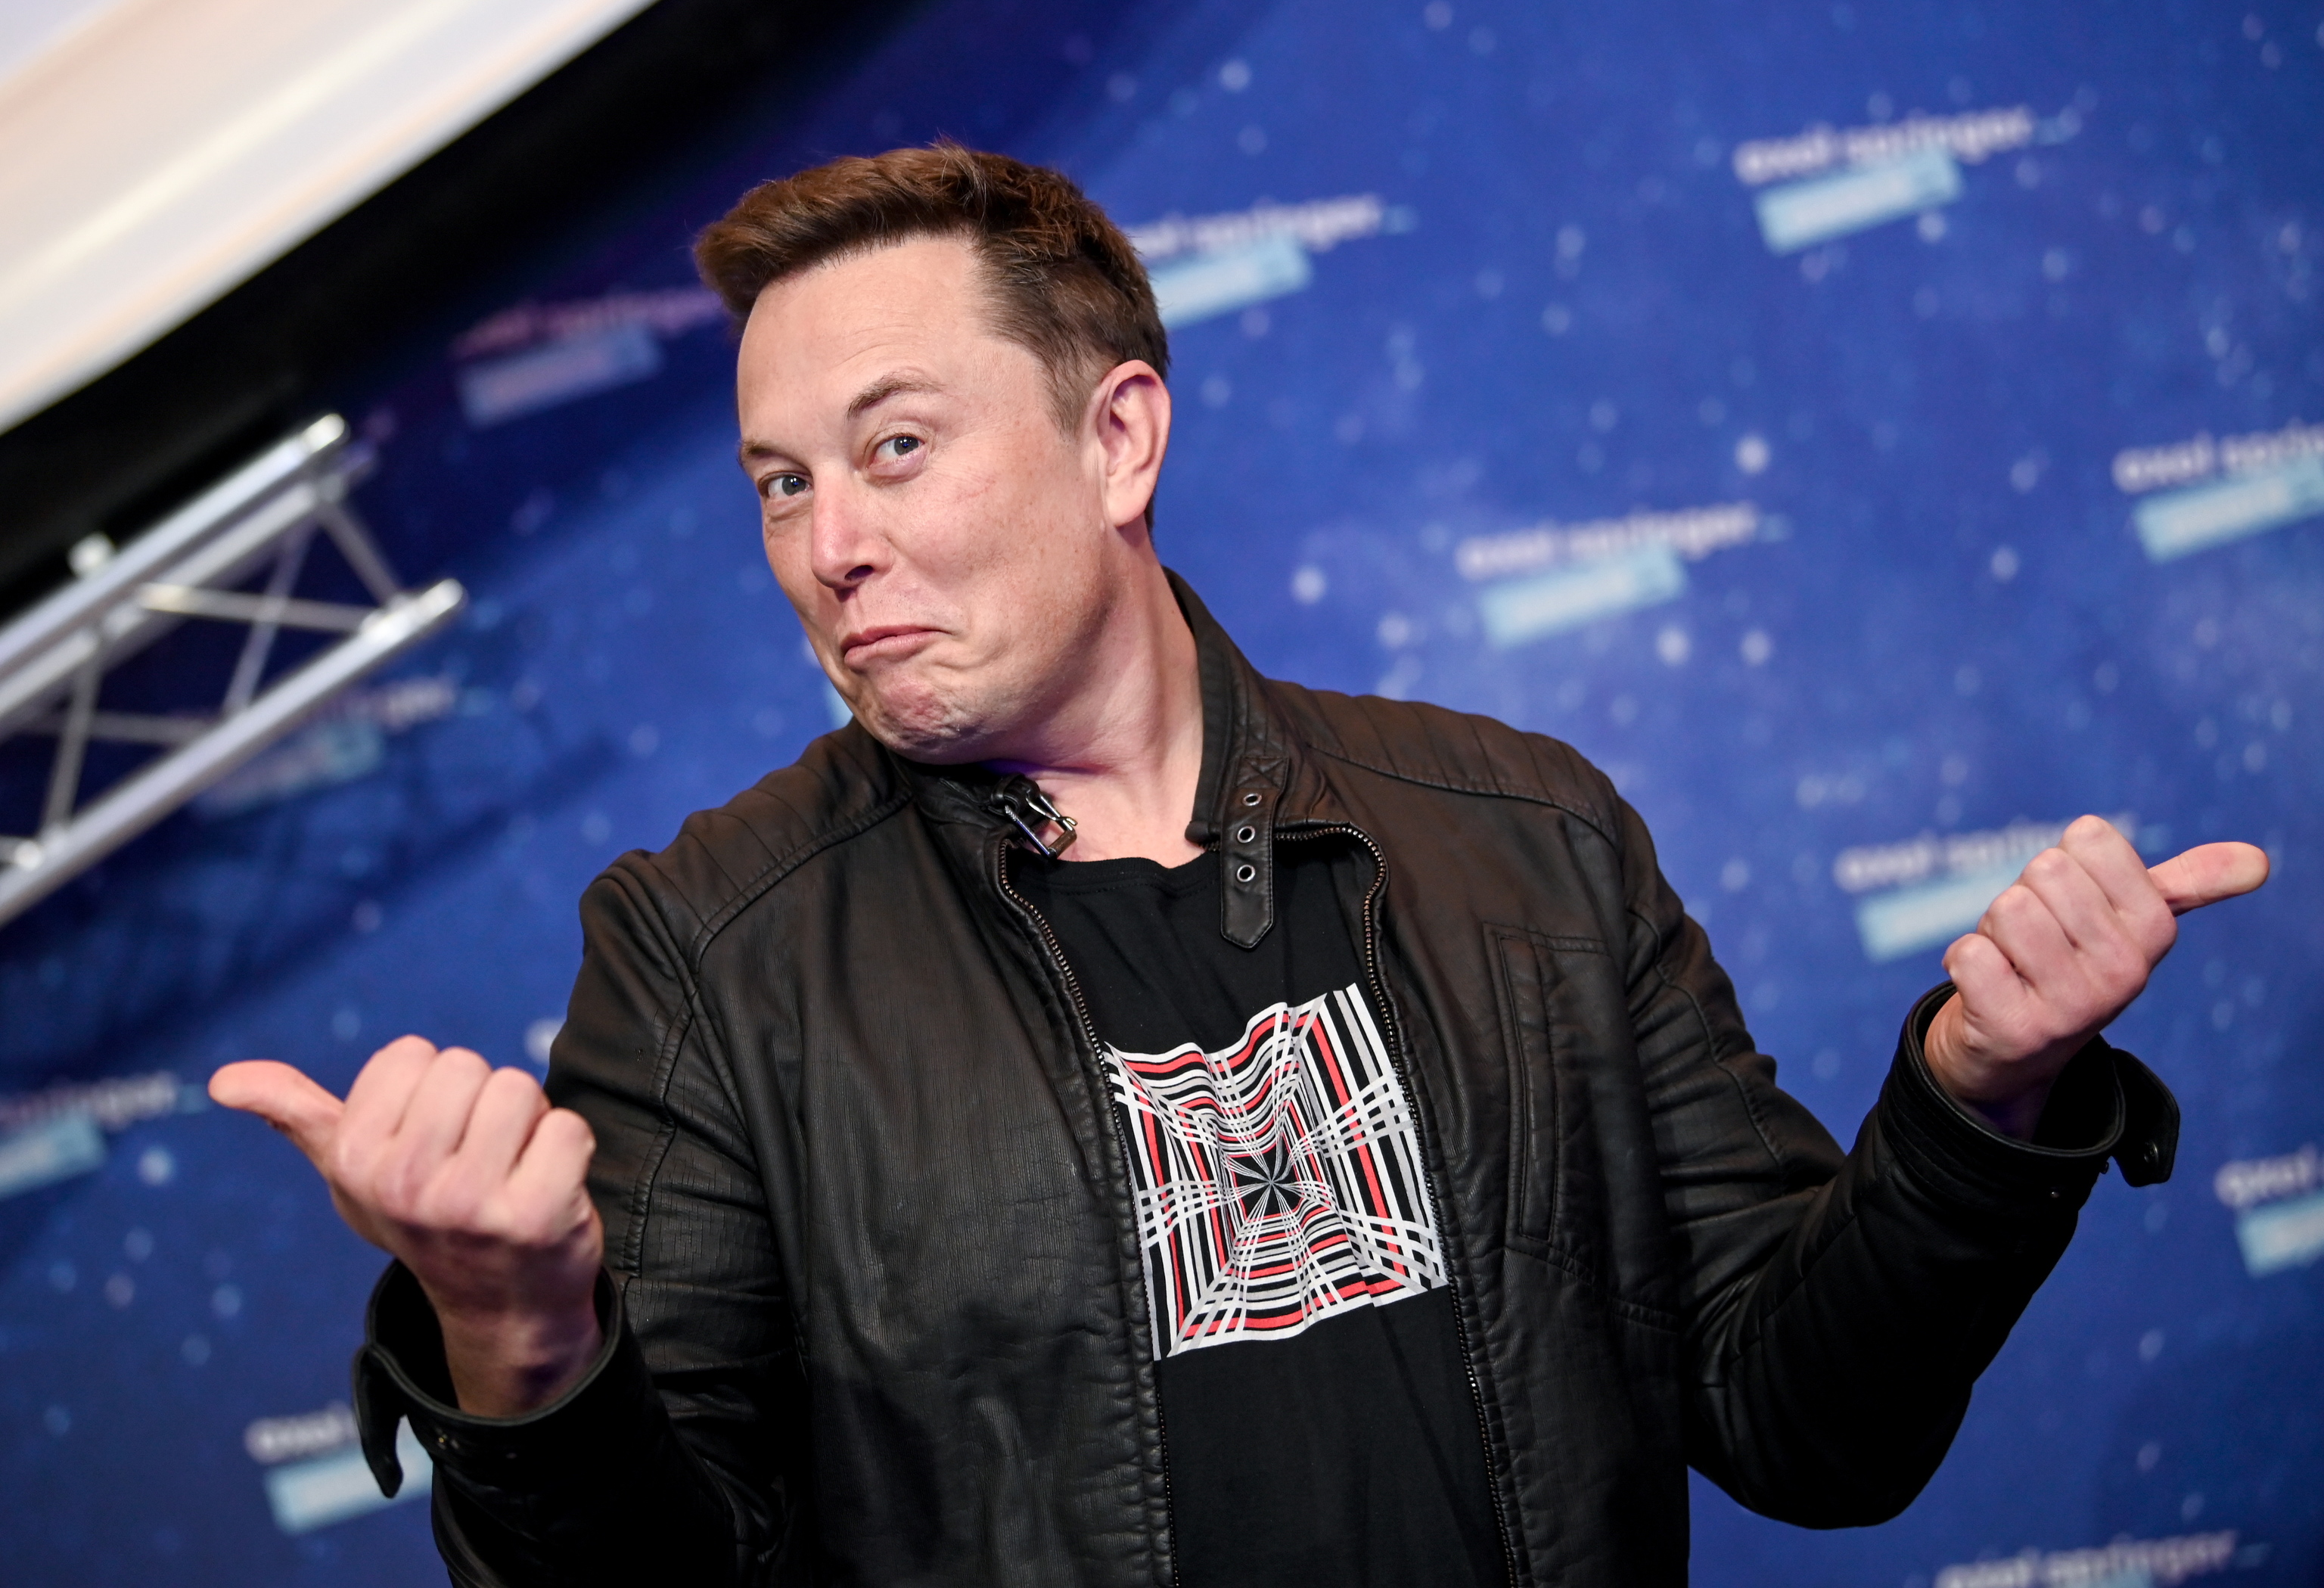 La negociación maratoniana por Twitter continúa: la compañía y Elon Musk acercan posturas para cerrar ya la venta